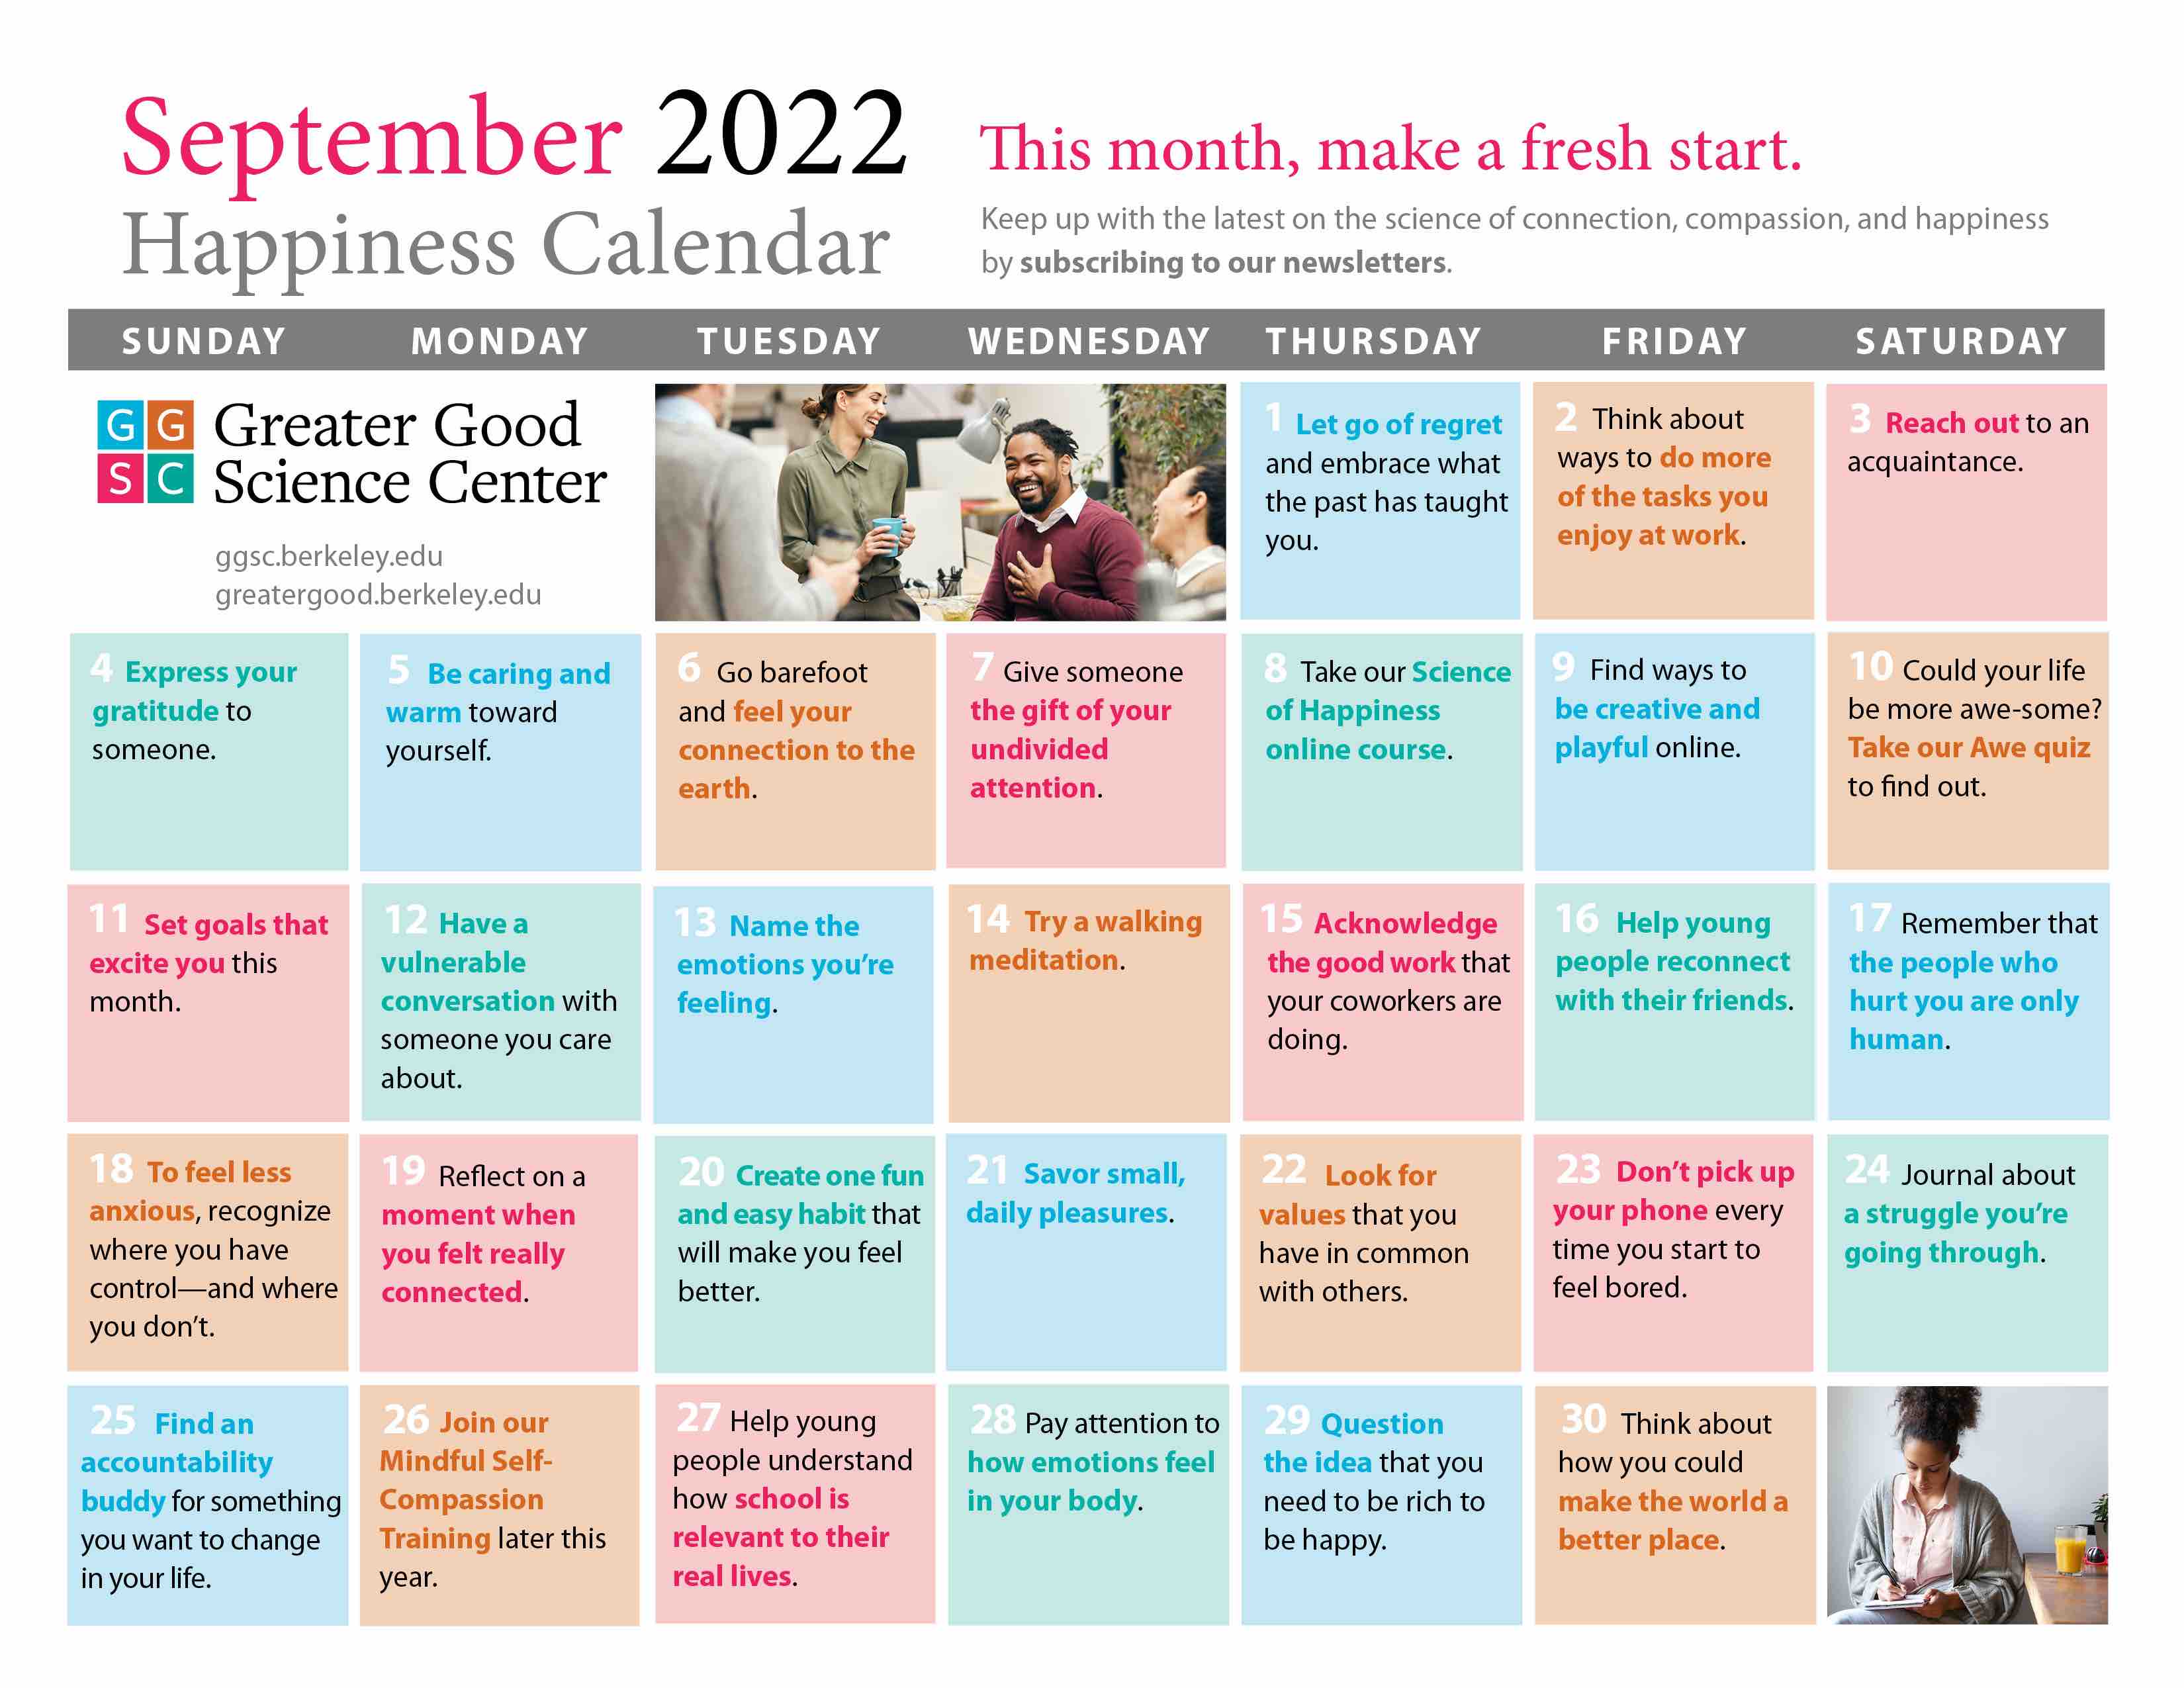 September 2022 happiness calendar